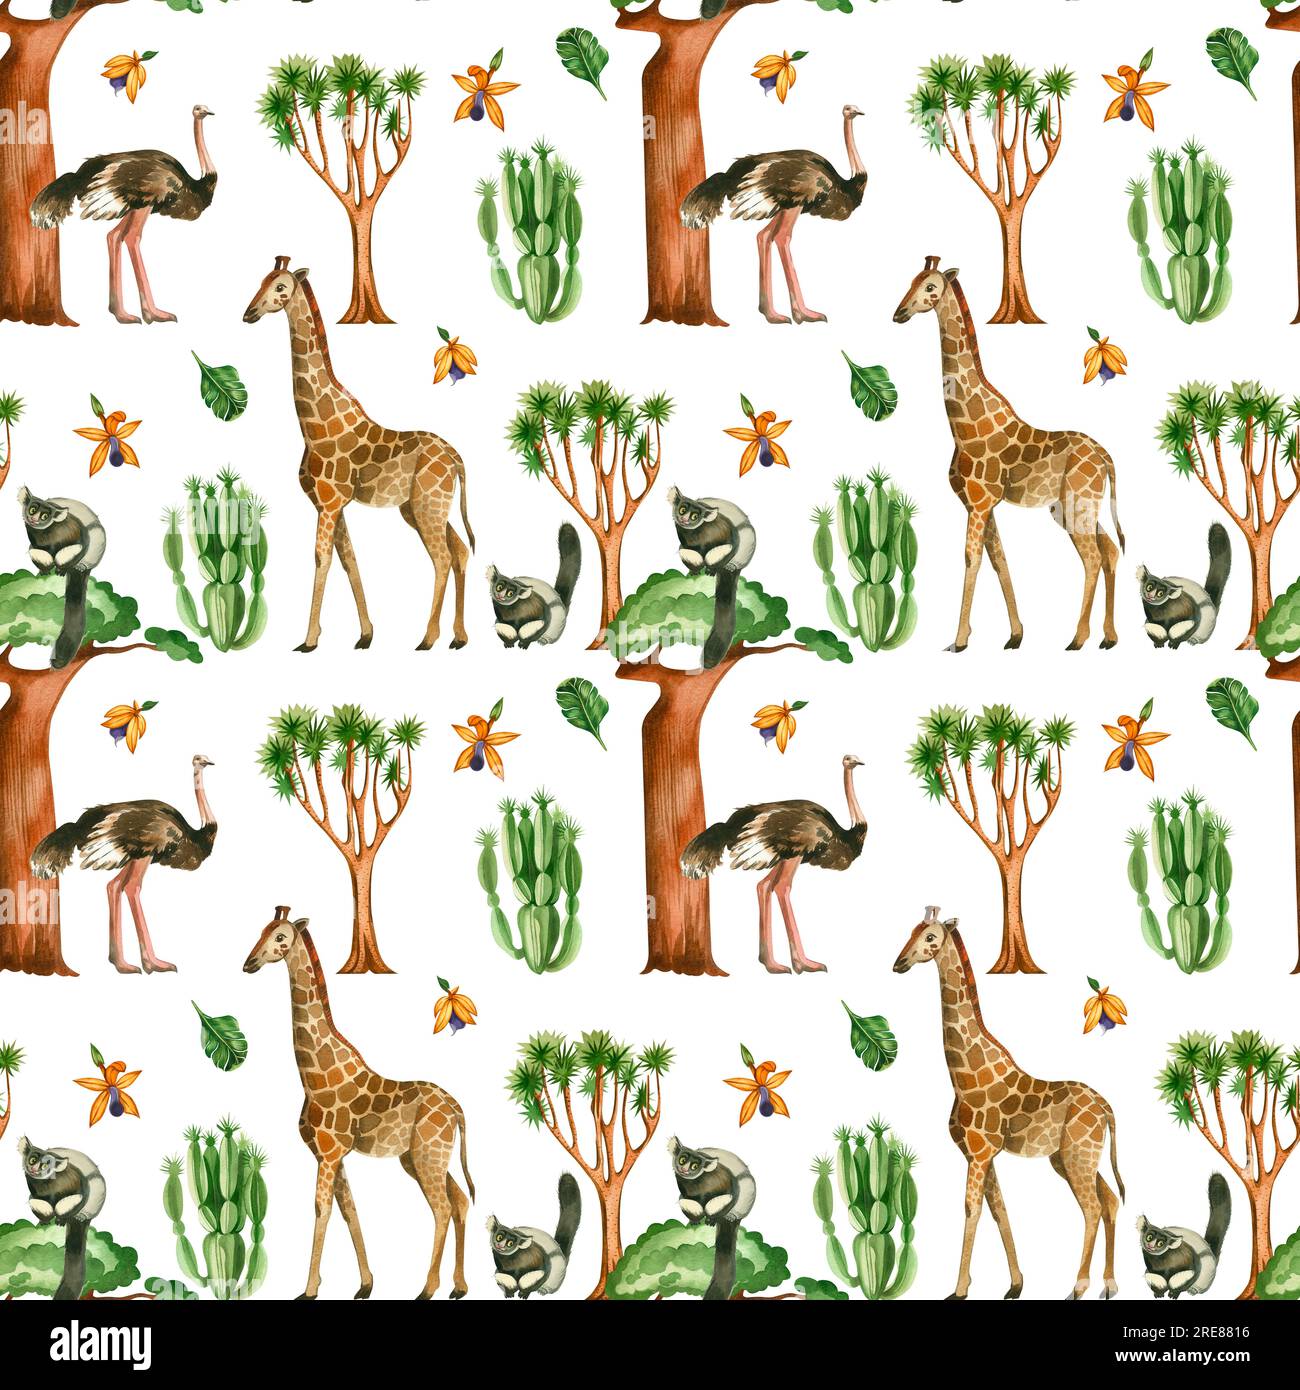 Motivo senza cuciture su sfondo bianco. Giraffa, struzzo, scimmie, cactus, foglie, gli alberi della giungla di baobab sono dipinti con acquerelli. Foto Stock